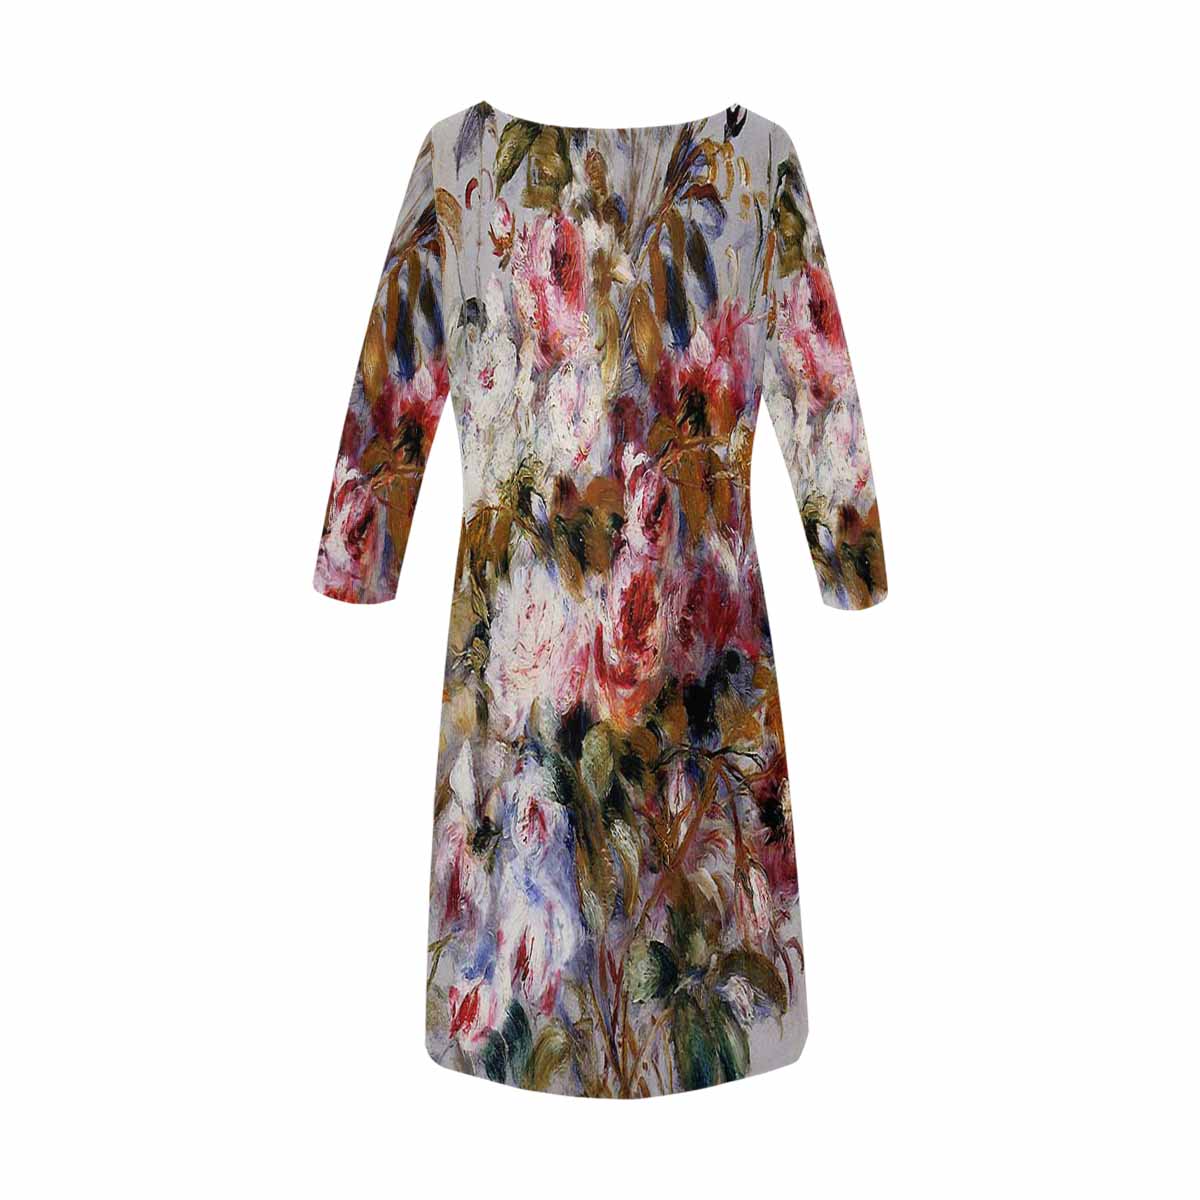 Vintage floral loose dress, model D29532 Design 12